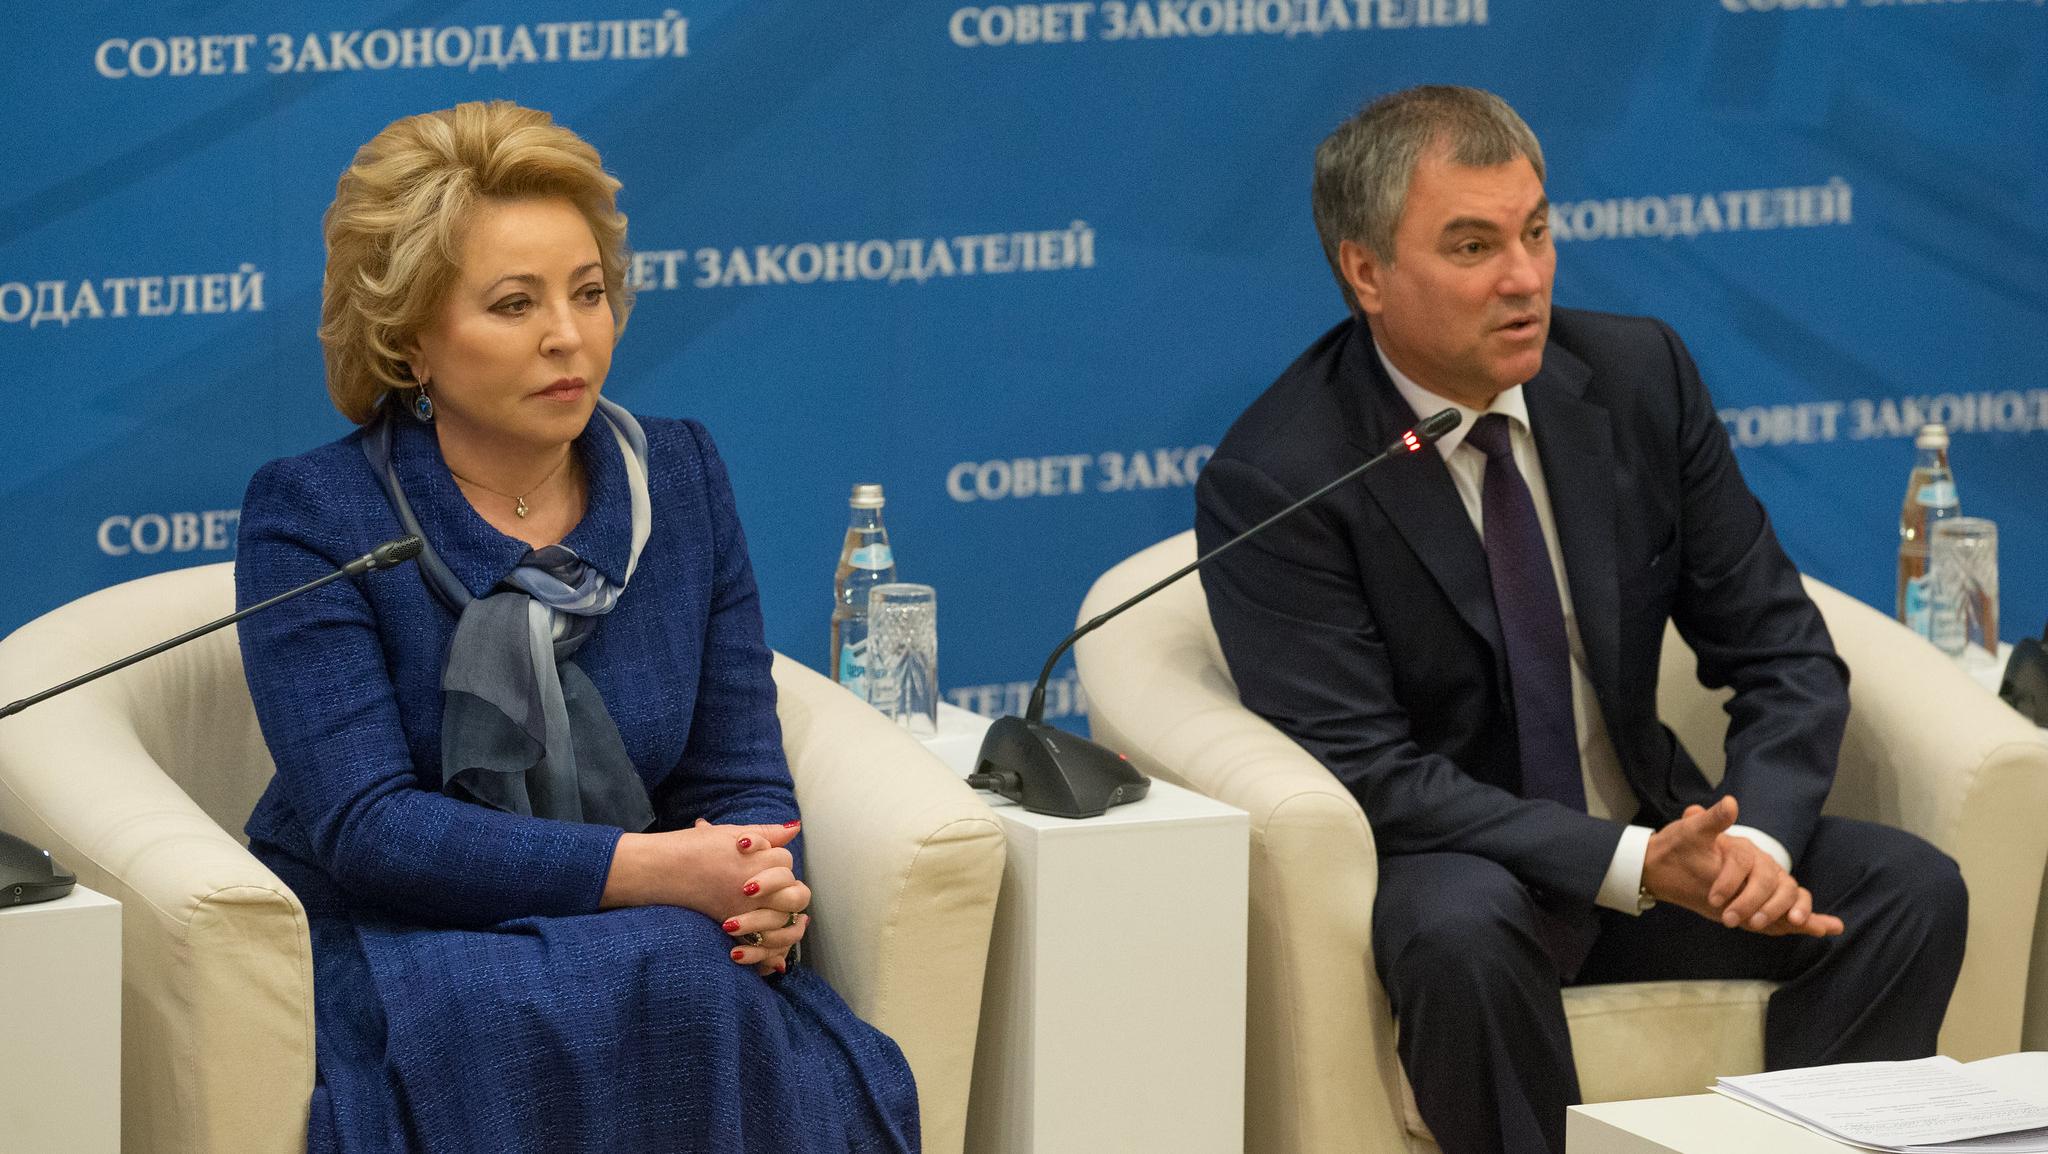 Валентина Матвиенко и Вячеслав Володин обсудили вопросы взаимодействия депутатов и сенаторов